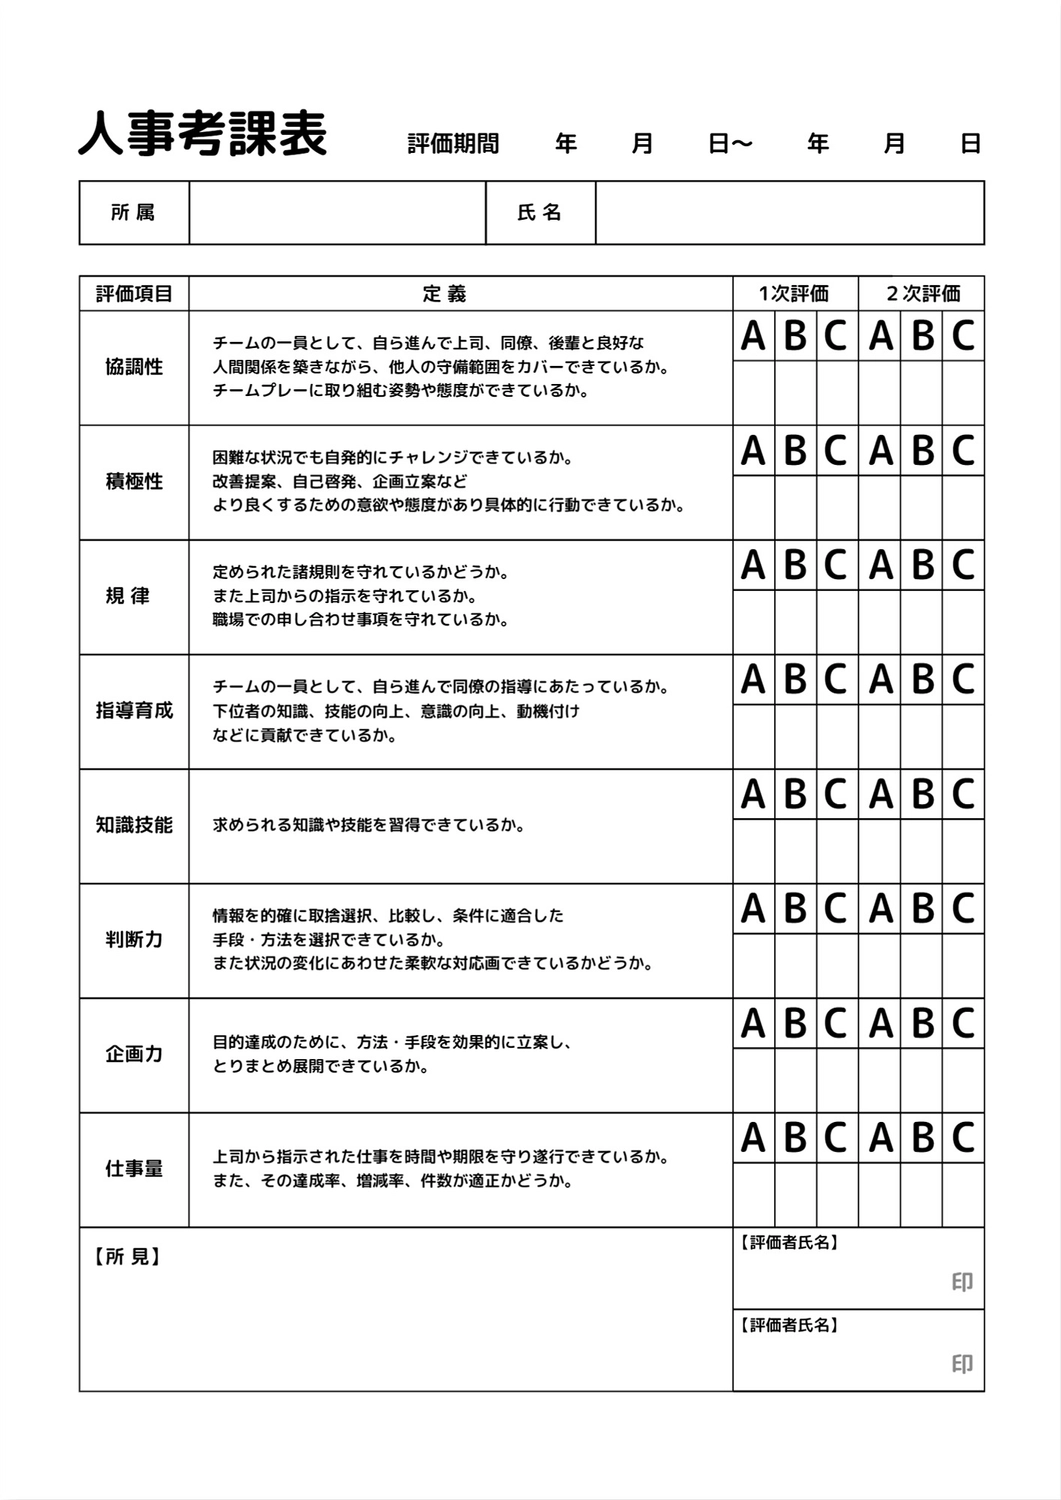 人事考課表テンプレート, chỉnh sửa, in, Tài liệu A4, Tài liệu A4 mẫu